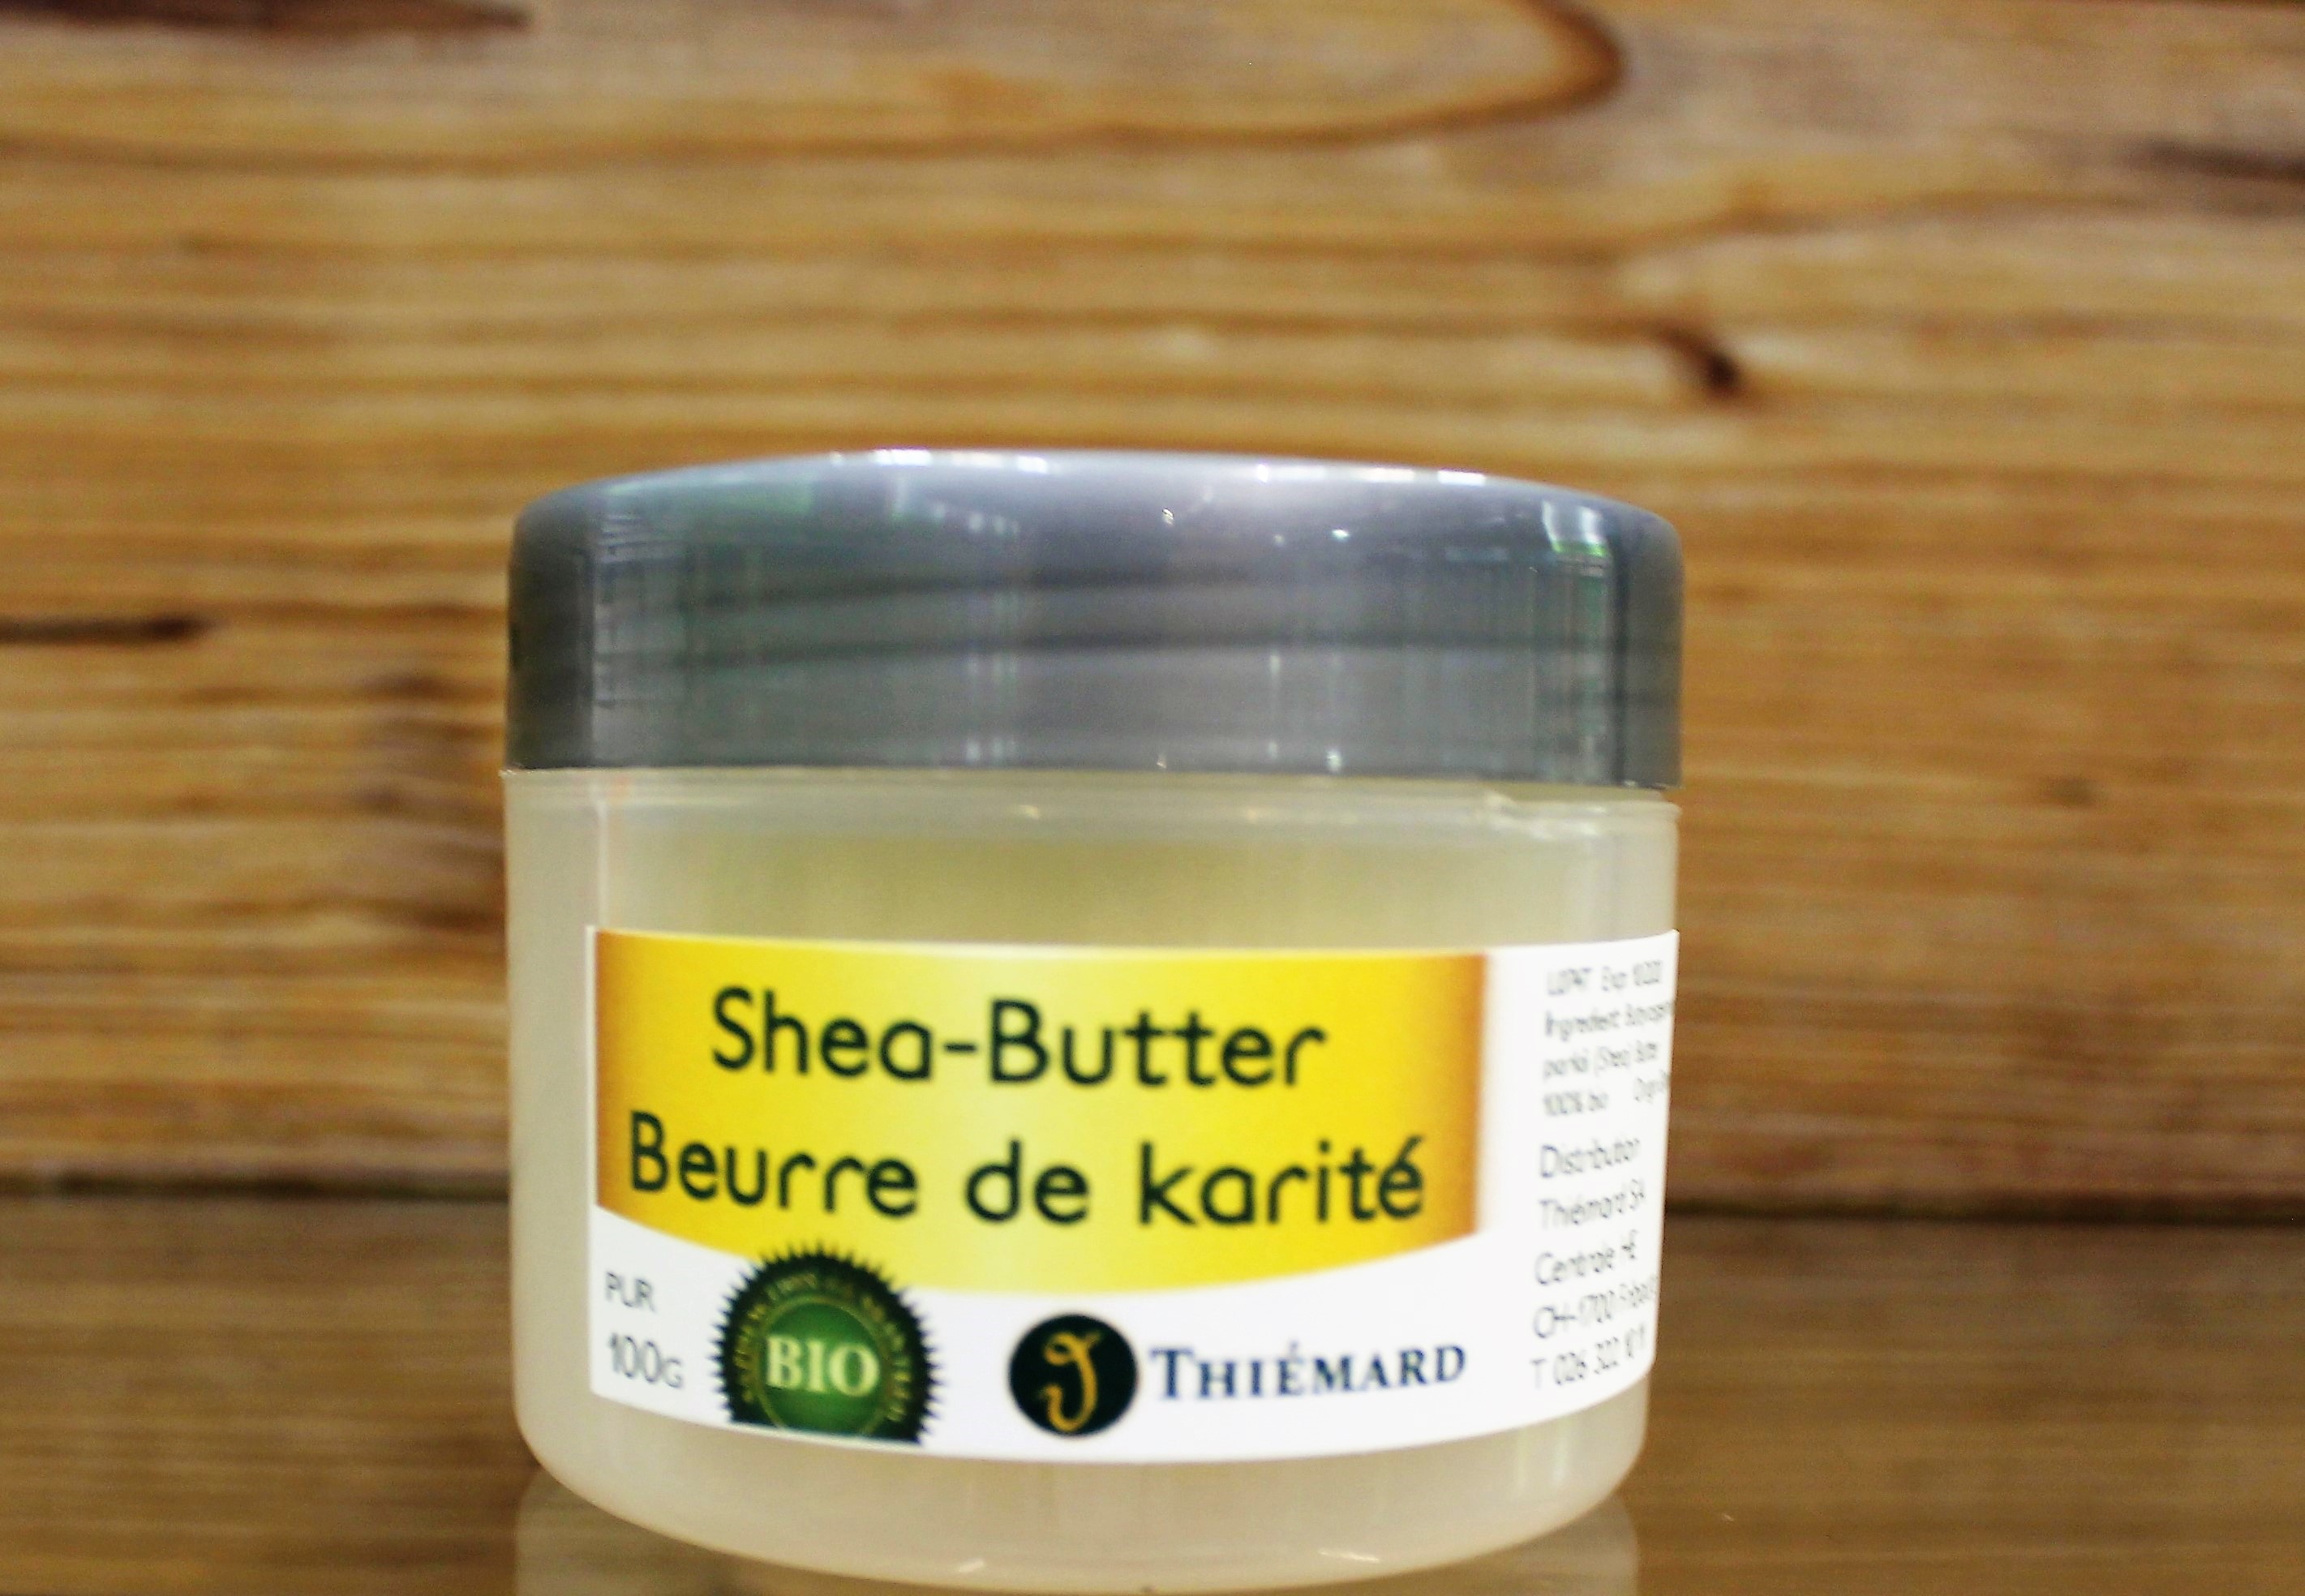 Shea-Butter pur 100% Bio 100g